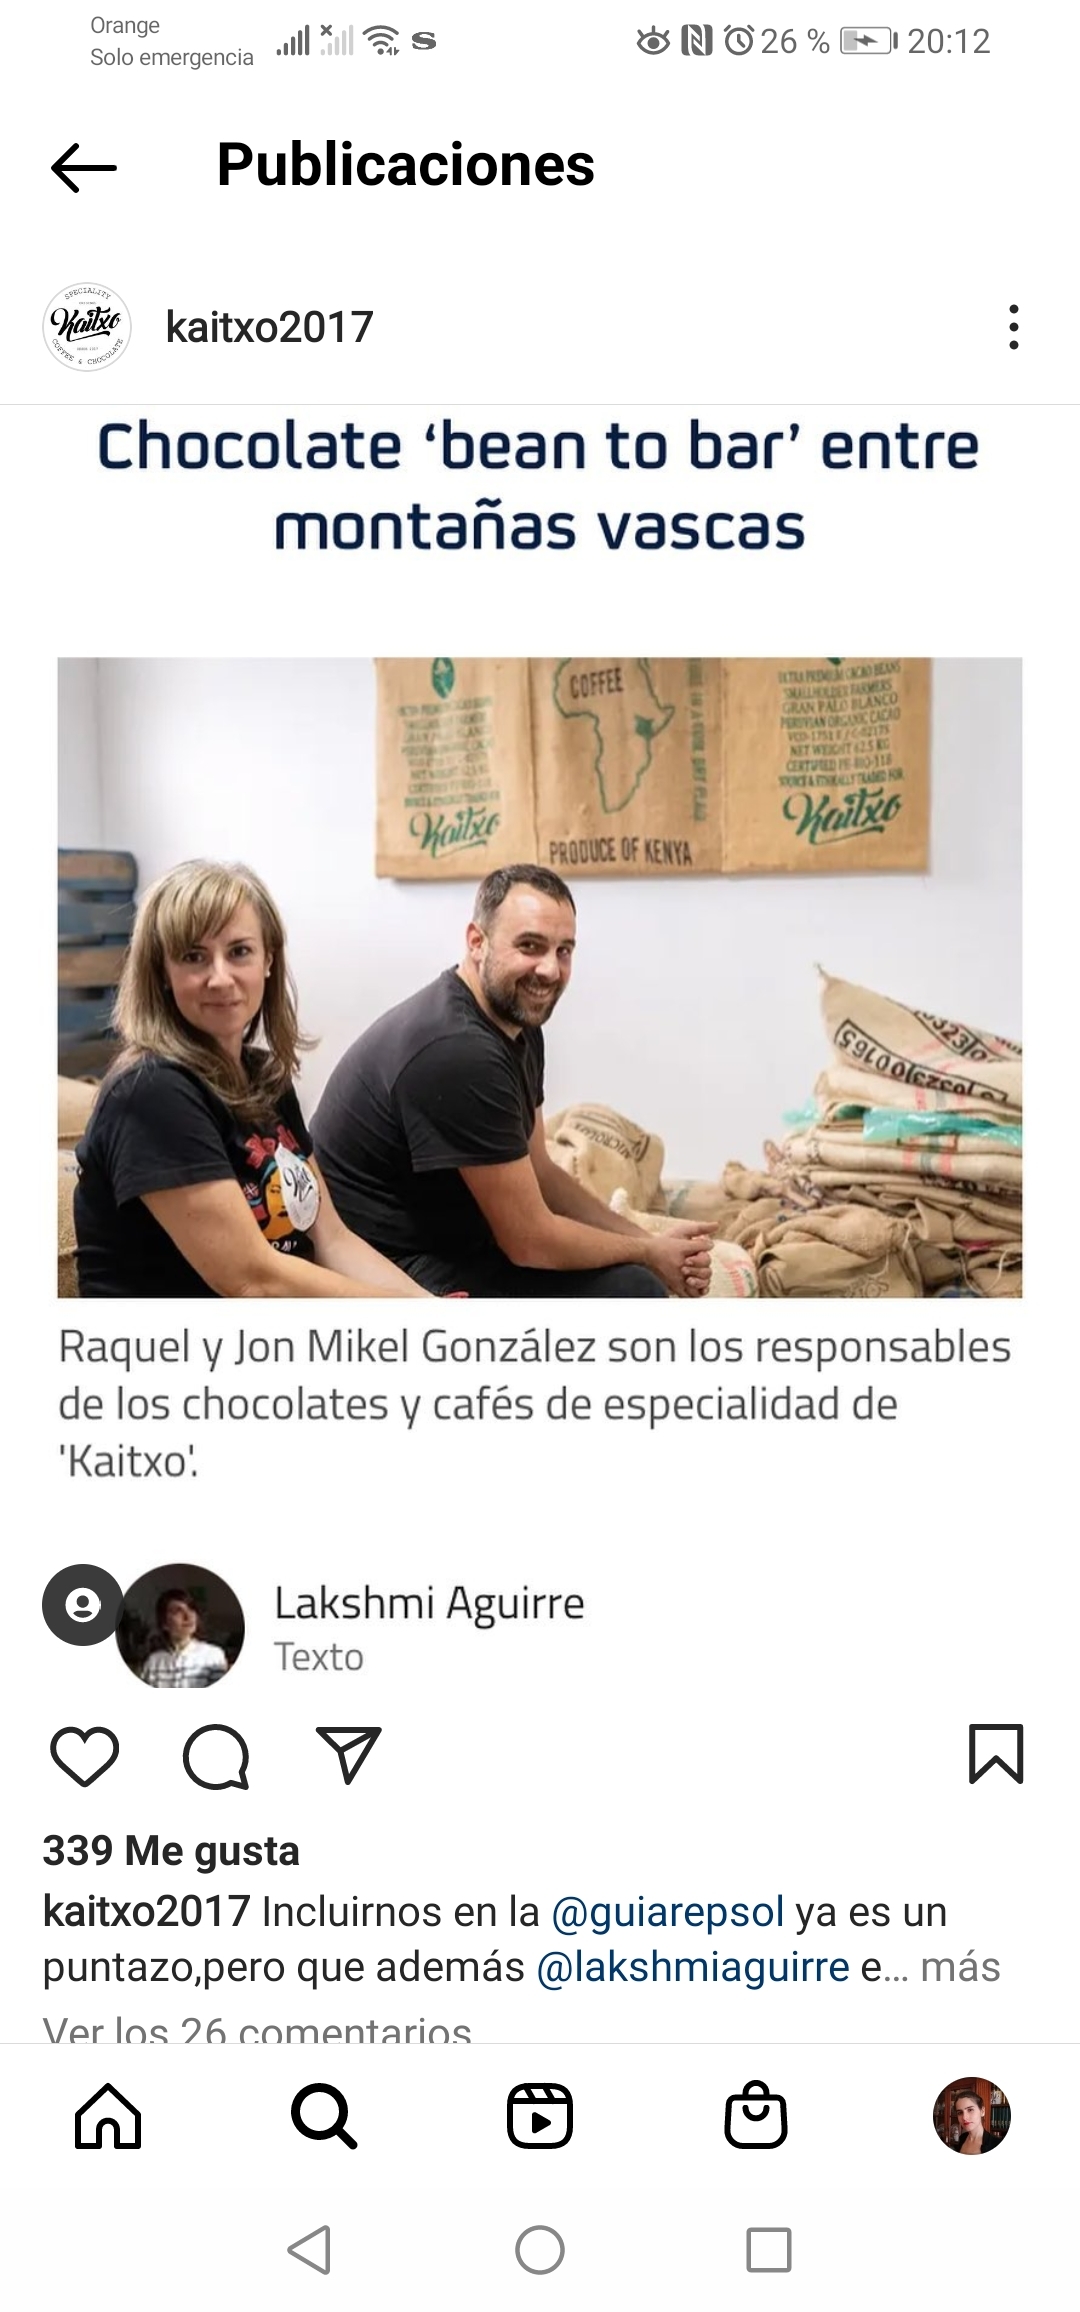 Raquel y Mikel Gonzlez, fundadores de Kaitxo